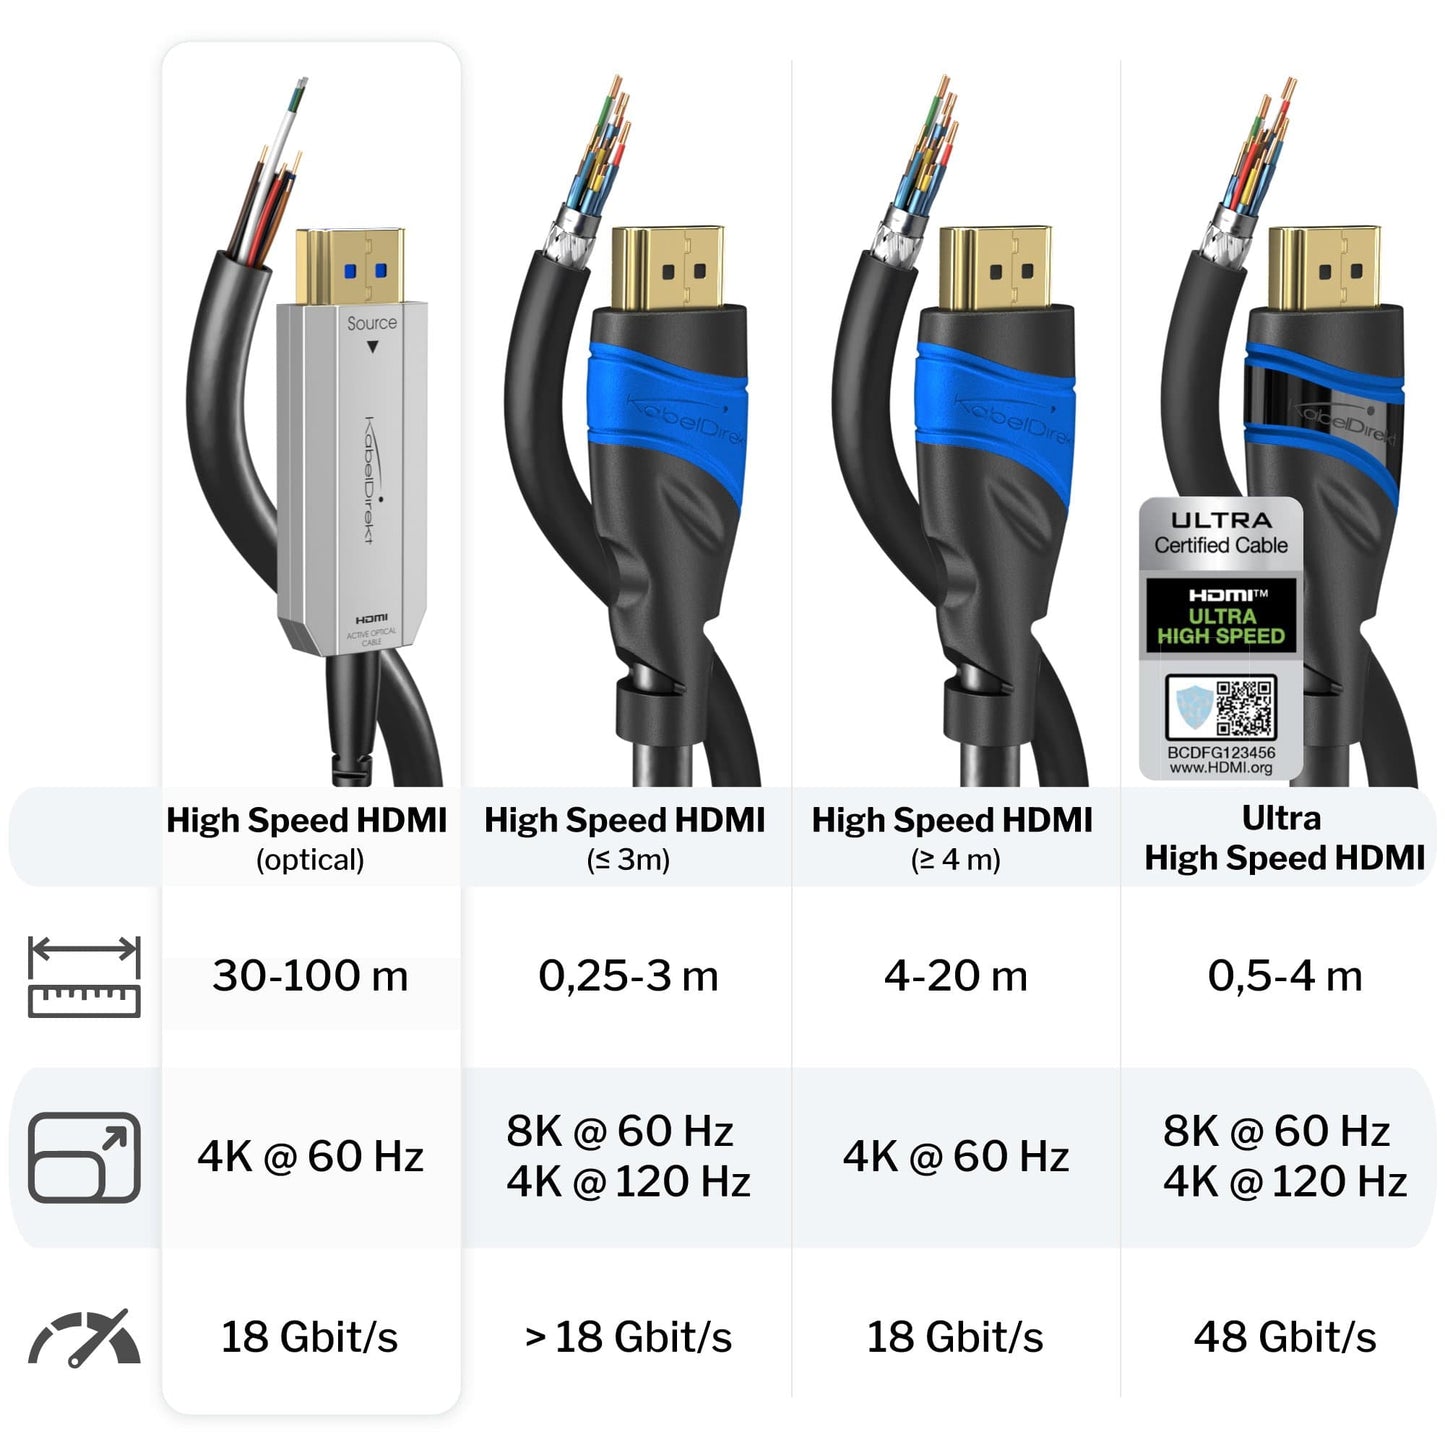 4K optisches High Speed HDMI 2.0 Kabel – 4K@60Hz, silber/schwarz, Lichtleiterkabel